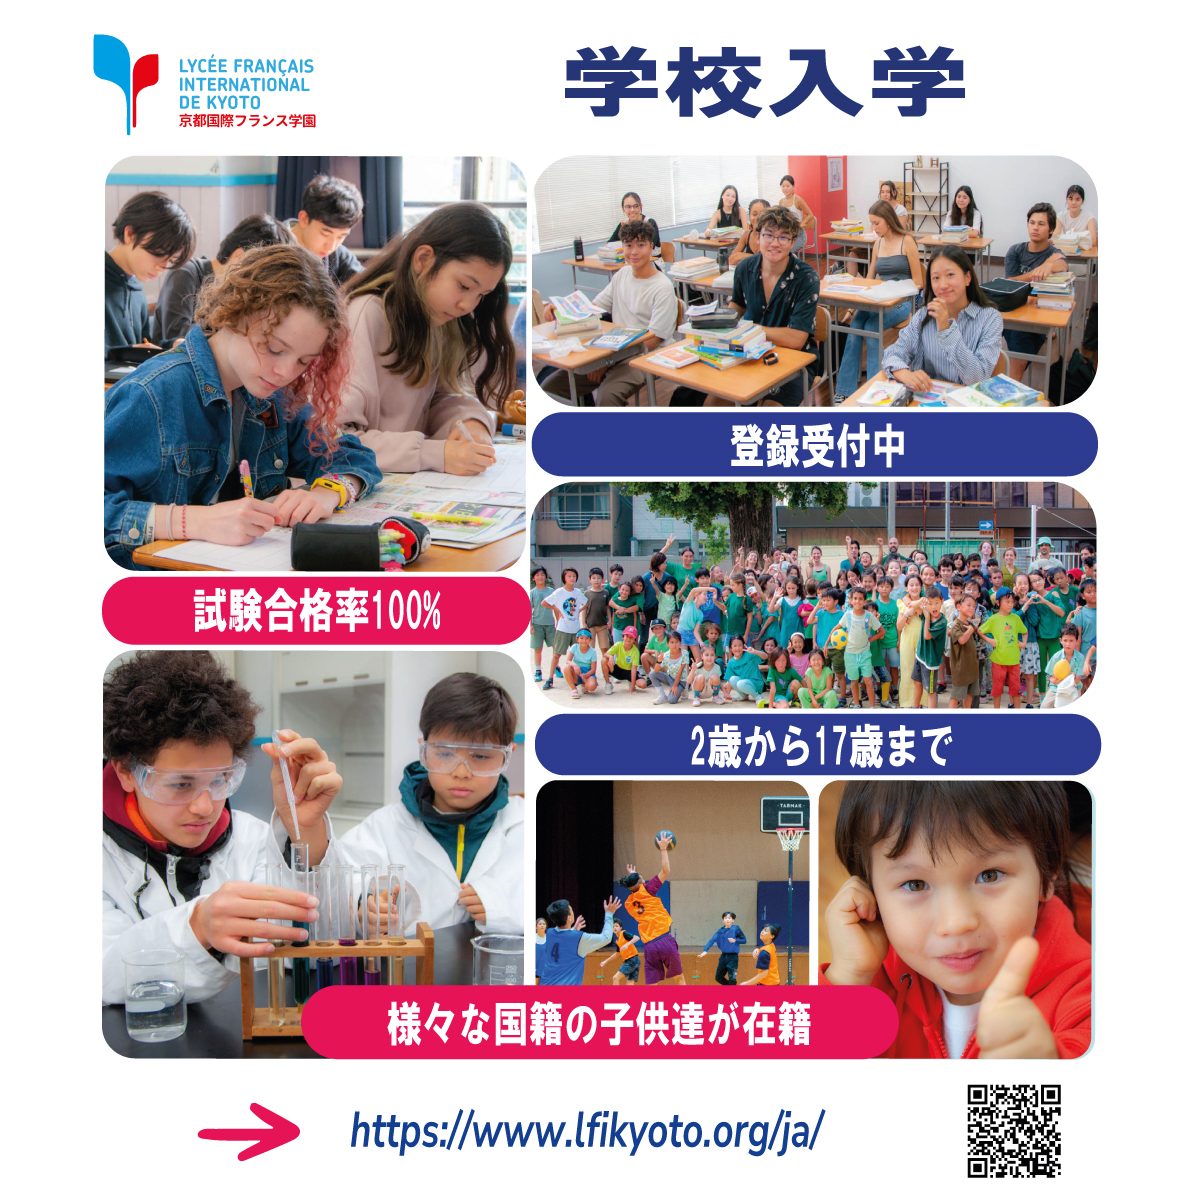 今すぐ京都国際フランス学園のコミュニティに参加しましょう！優れた教育、活気に満ちた多文化な環境、そしてすべての生徒が成長できる機会を提供します。

➡ lfikyoto.org/ja/

#インターナショナルスクール 
#多文化教育 
#学生の成功